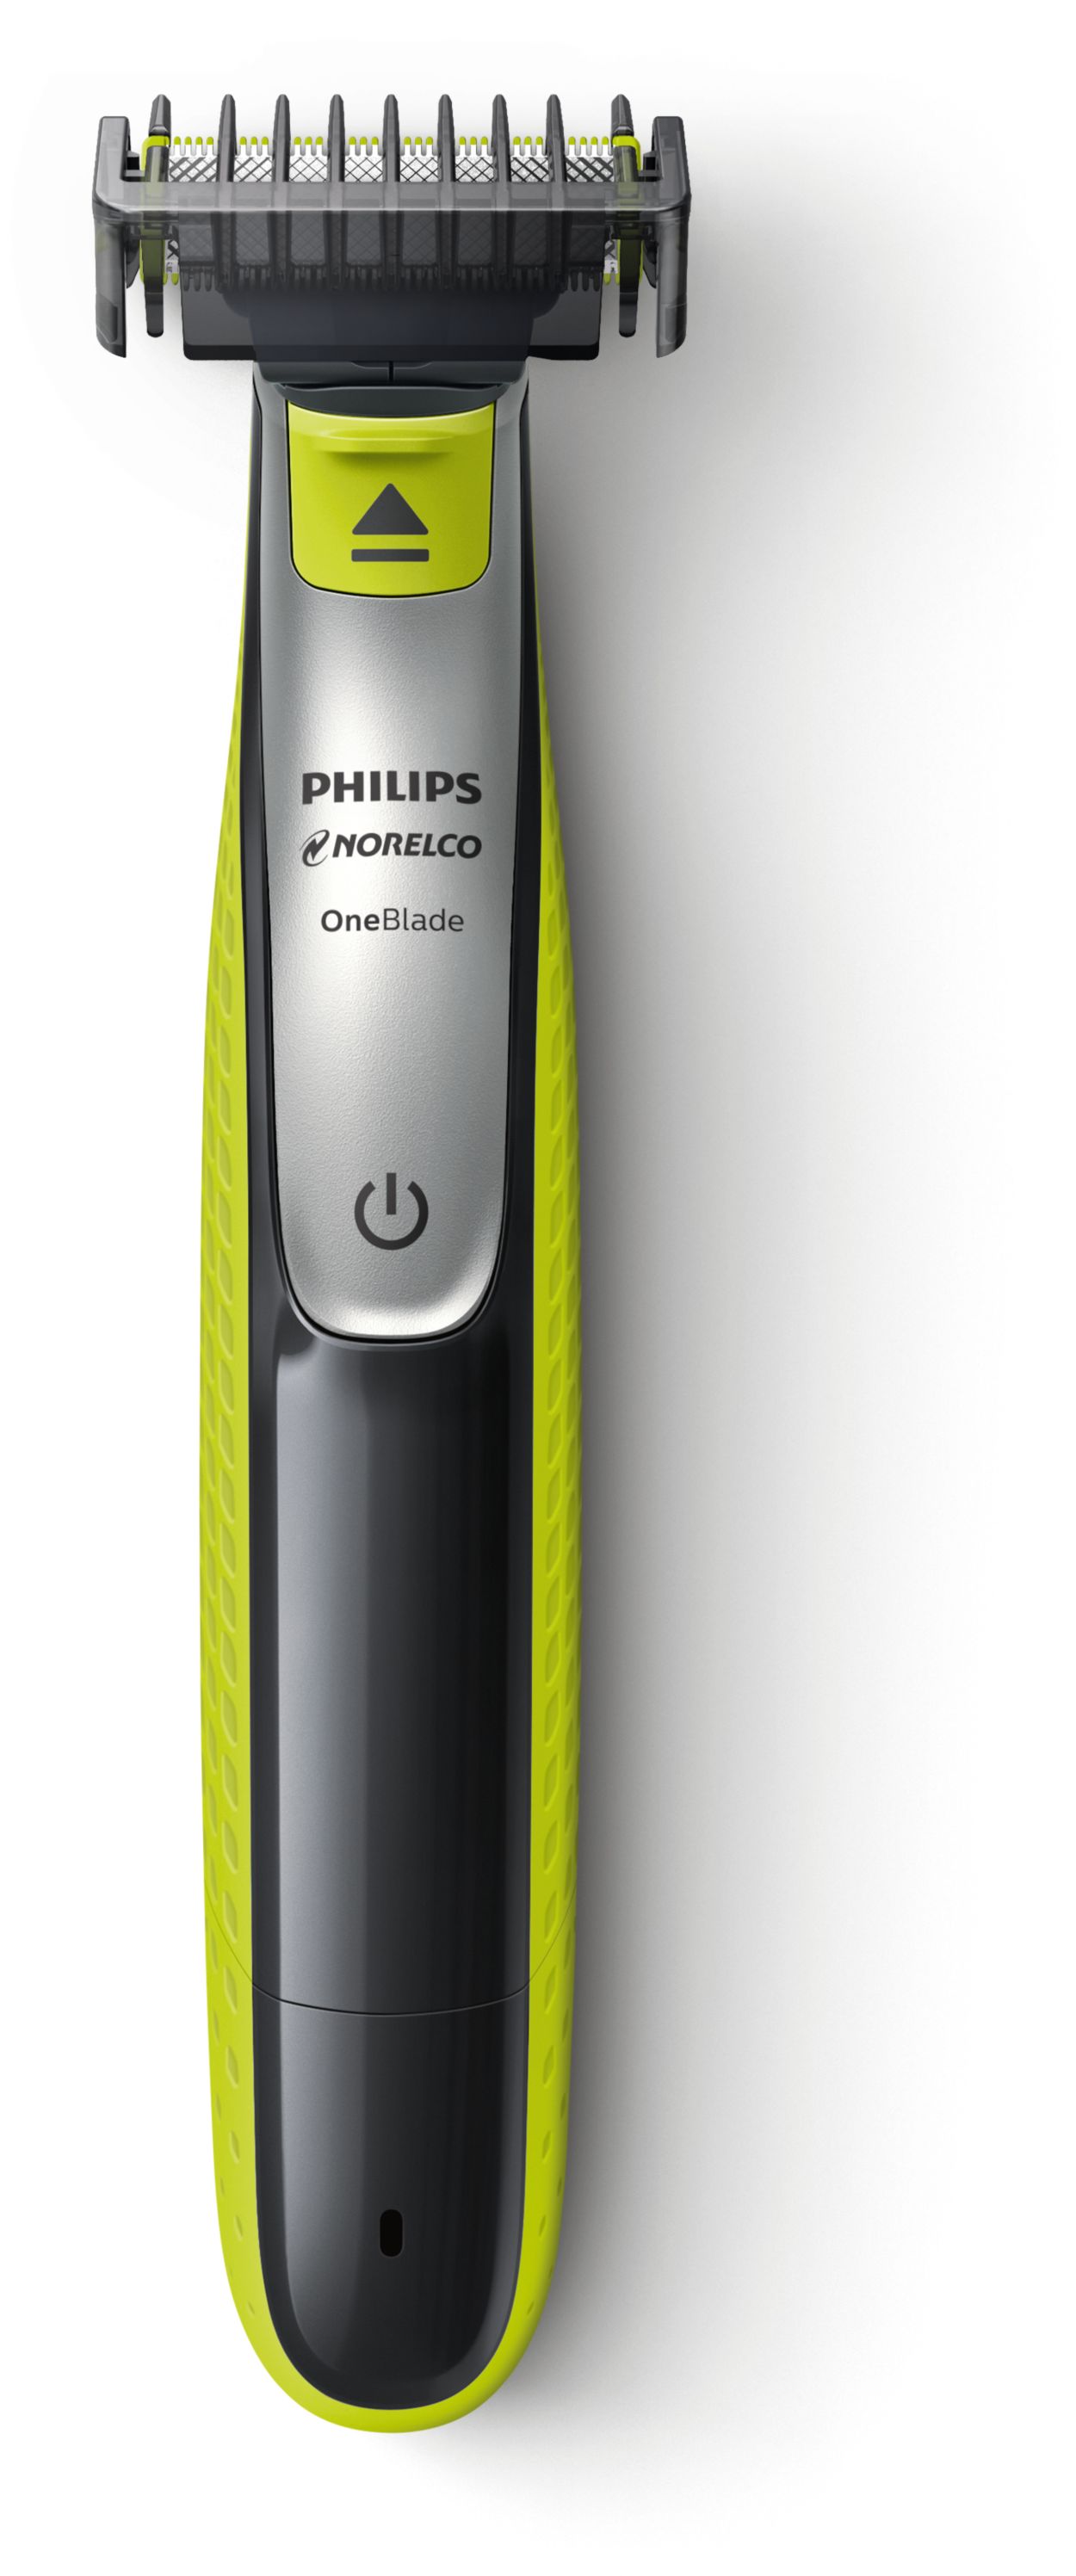 Rasuradora de Barba y Bigote ONE BLADE de Philips QP2630/70